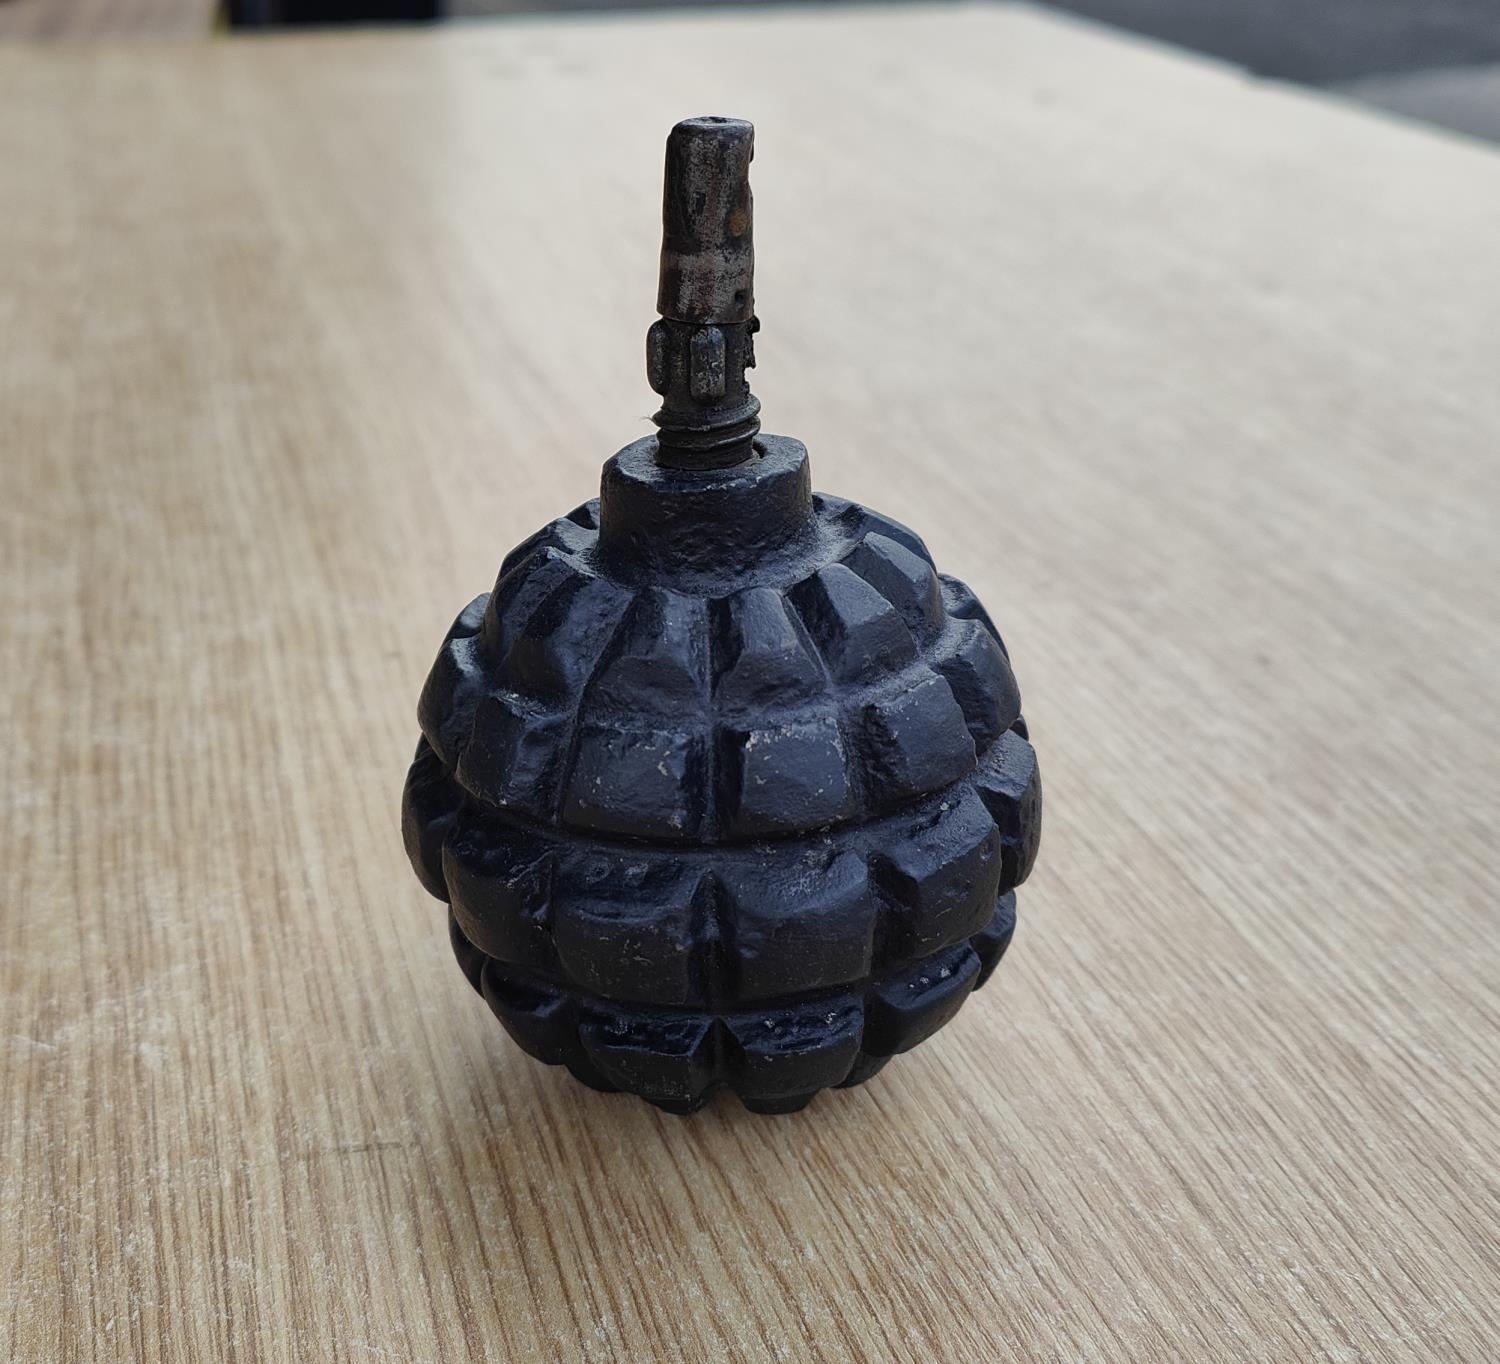 A WWI bell hand grenade (inert)